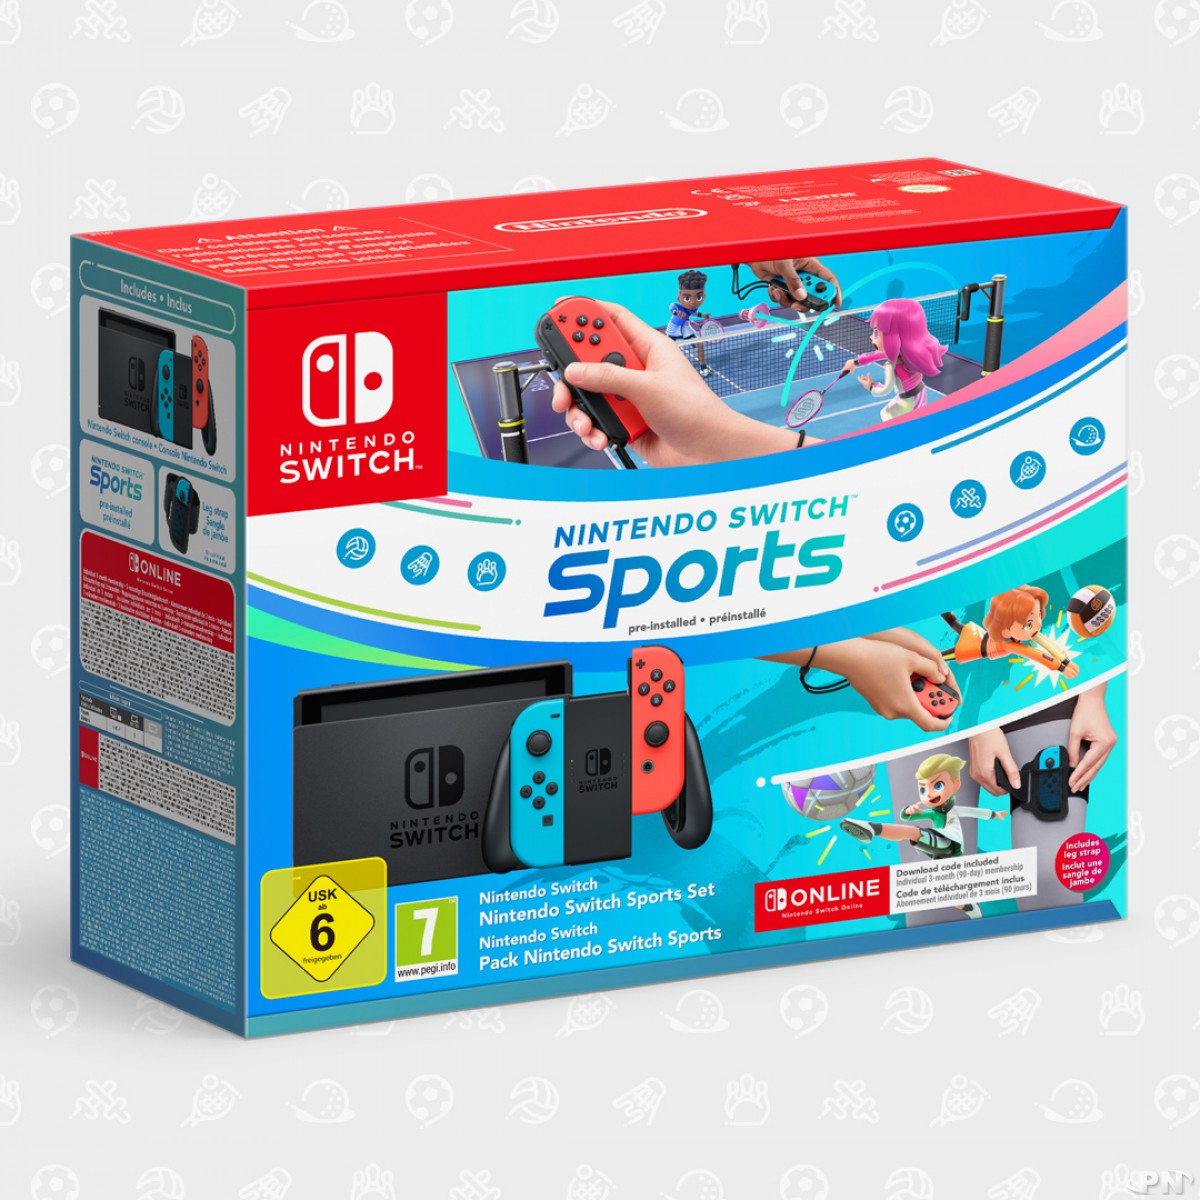 Nouveau bundle de la nouvelle Nintendo Switch (modèle 1.1 de 2019) avec Nintendo Switch Sports